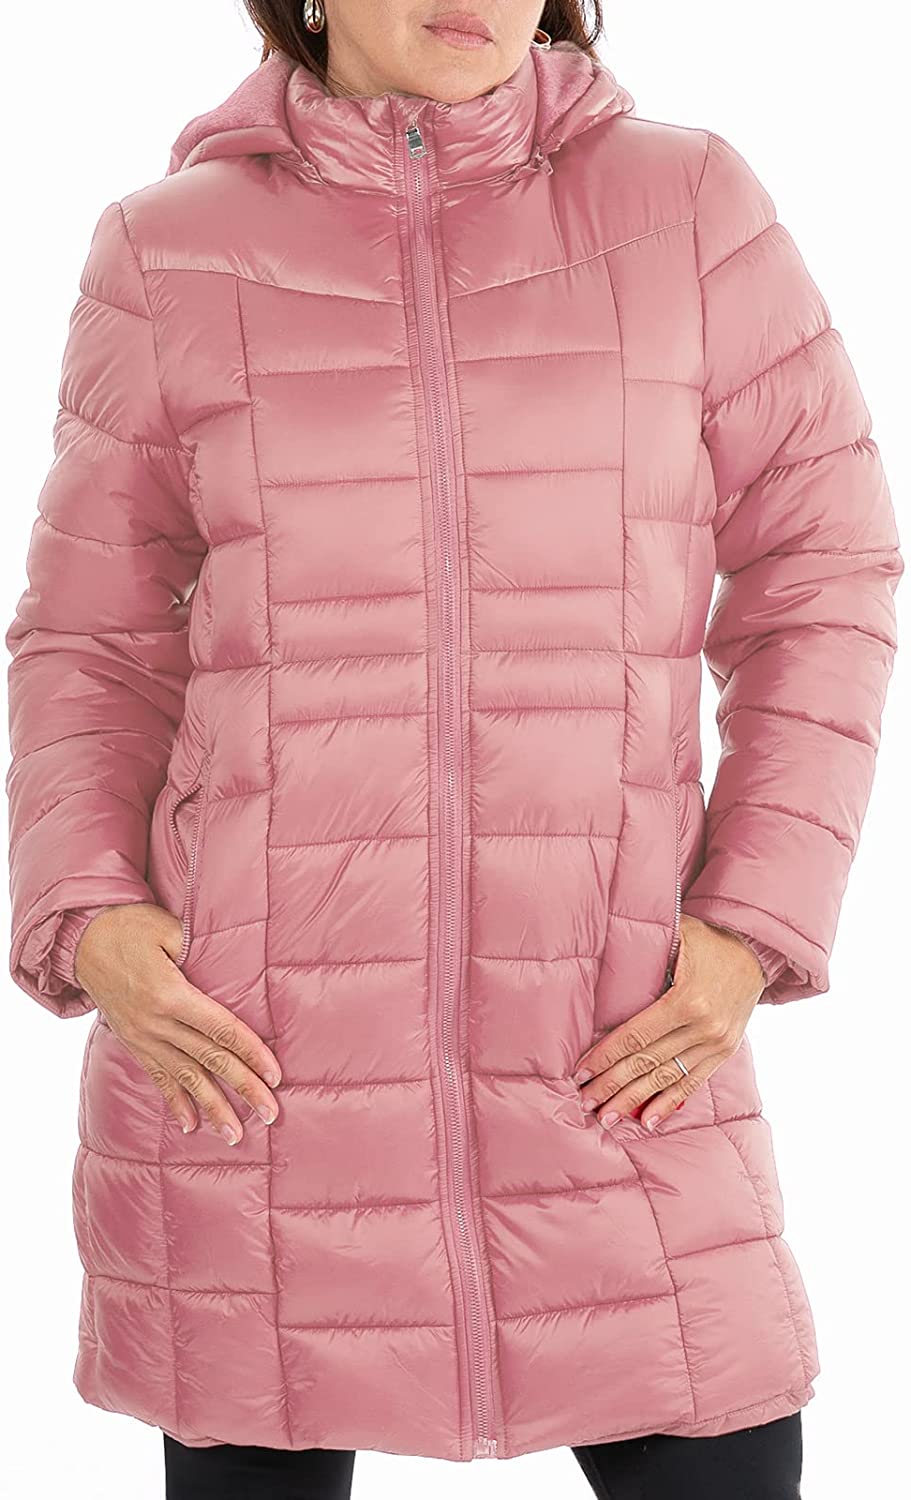 Facitisu Womens Winter Warm Jacket Long Down Faux Fur Hooded